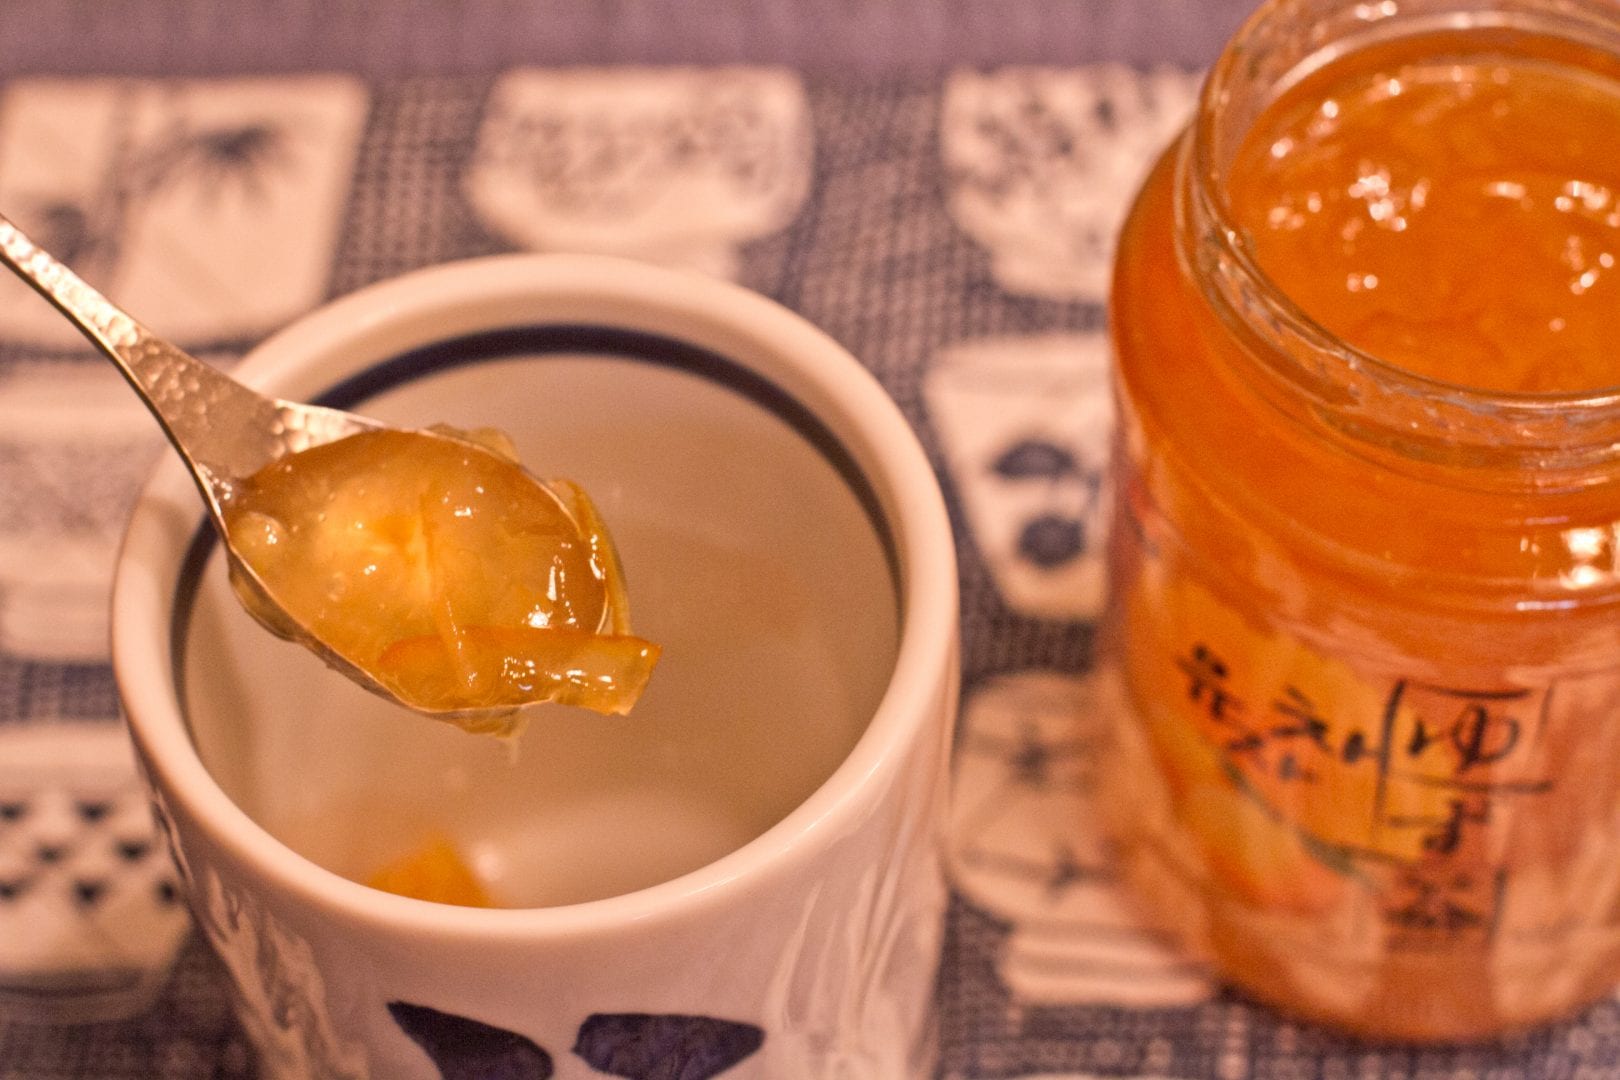 Yuzu - o limão japonês que encanta chefs com seu aroma único